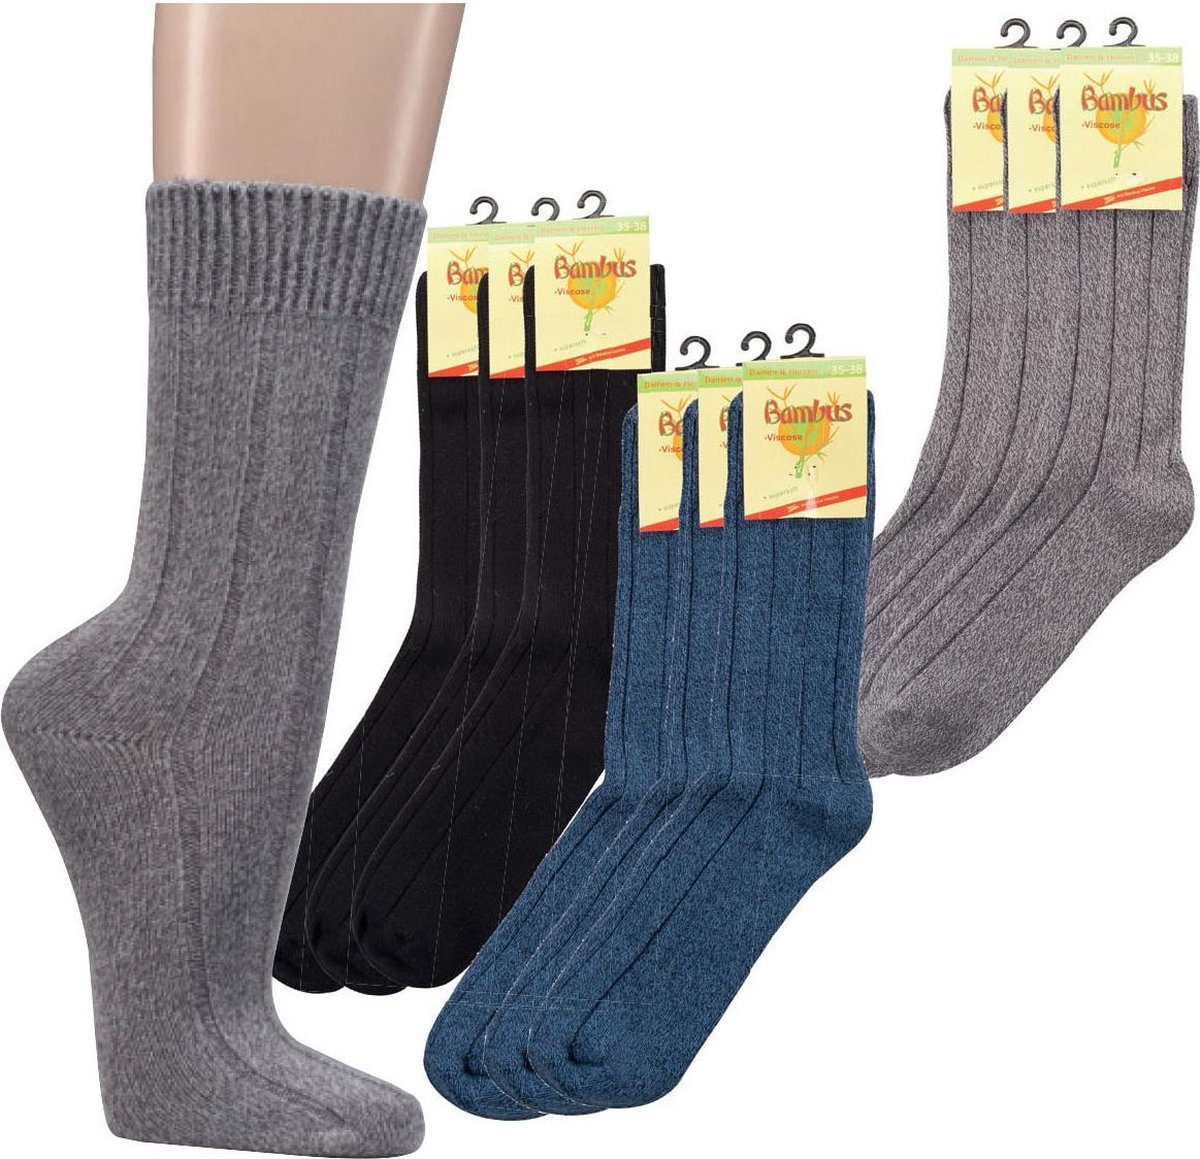 Bamboe sokken - extra warme uitvoering / wintersokken - 2 paar - blauw - normale schachtlengte - maat 43/46